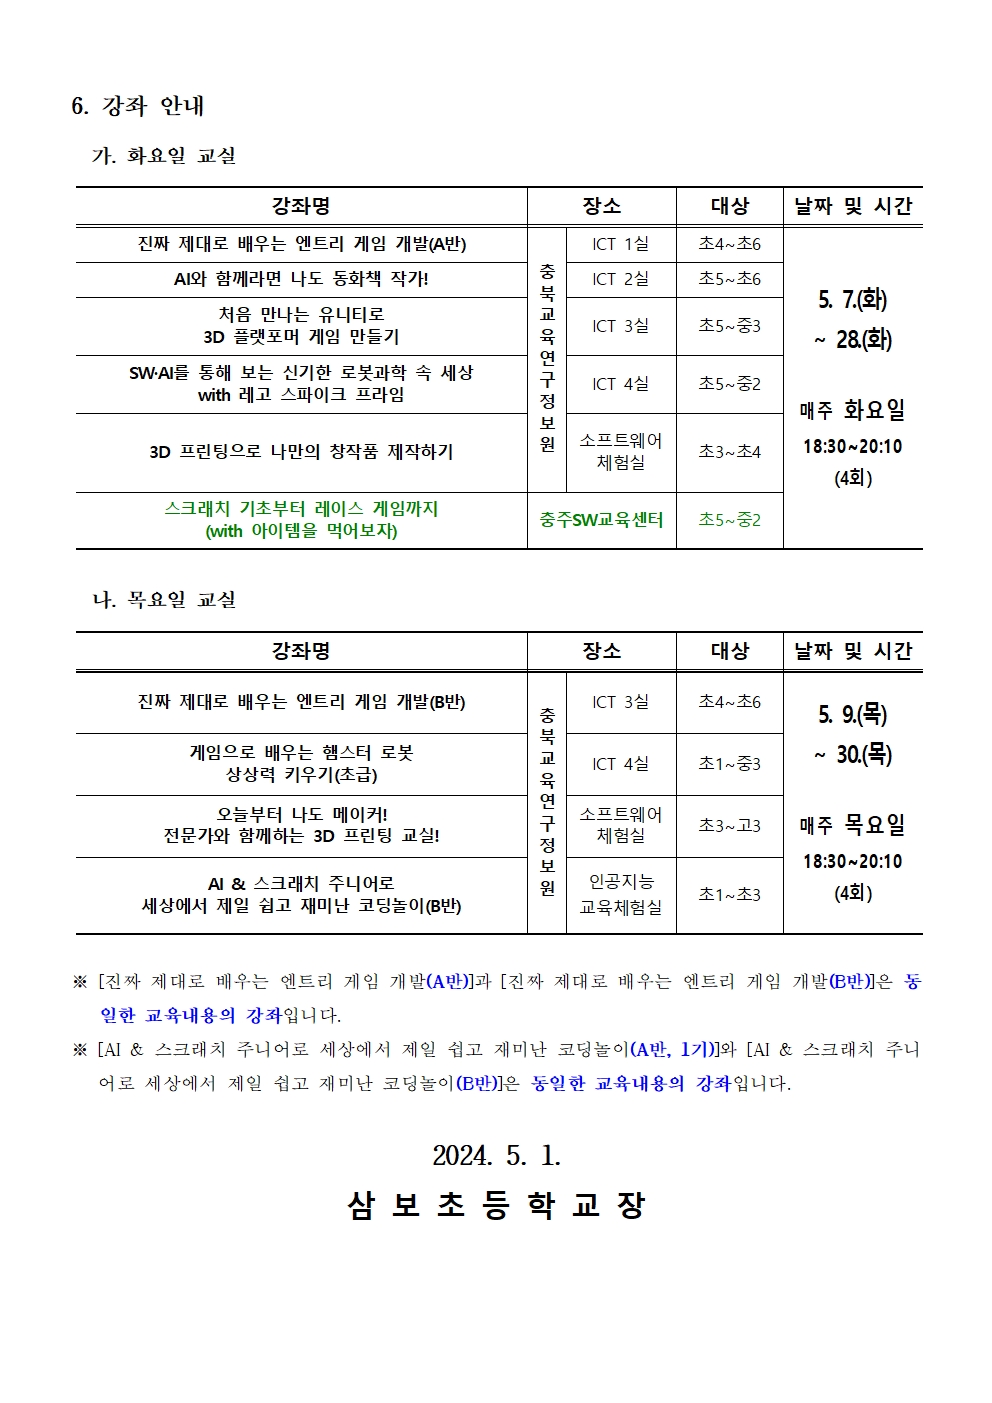 2024. 하굣길 SW·AI교실(2기) 추가 운영 안내 가정통신문002